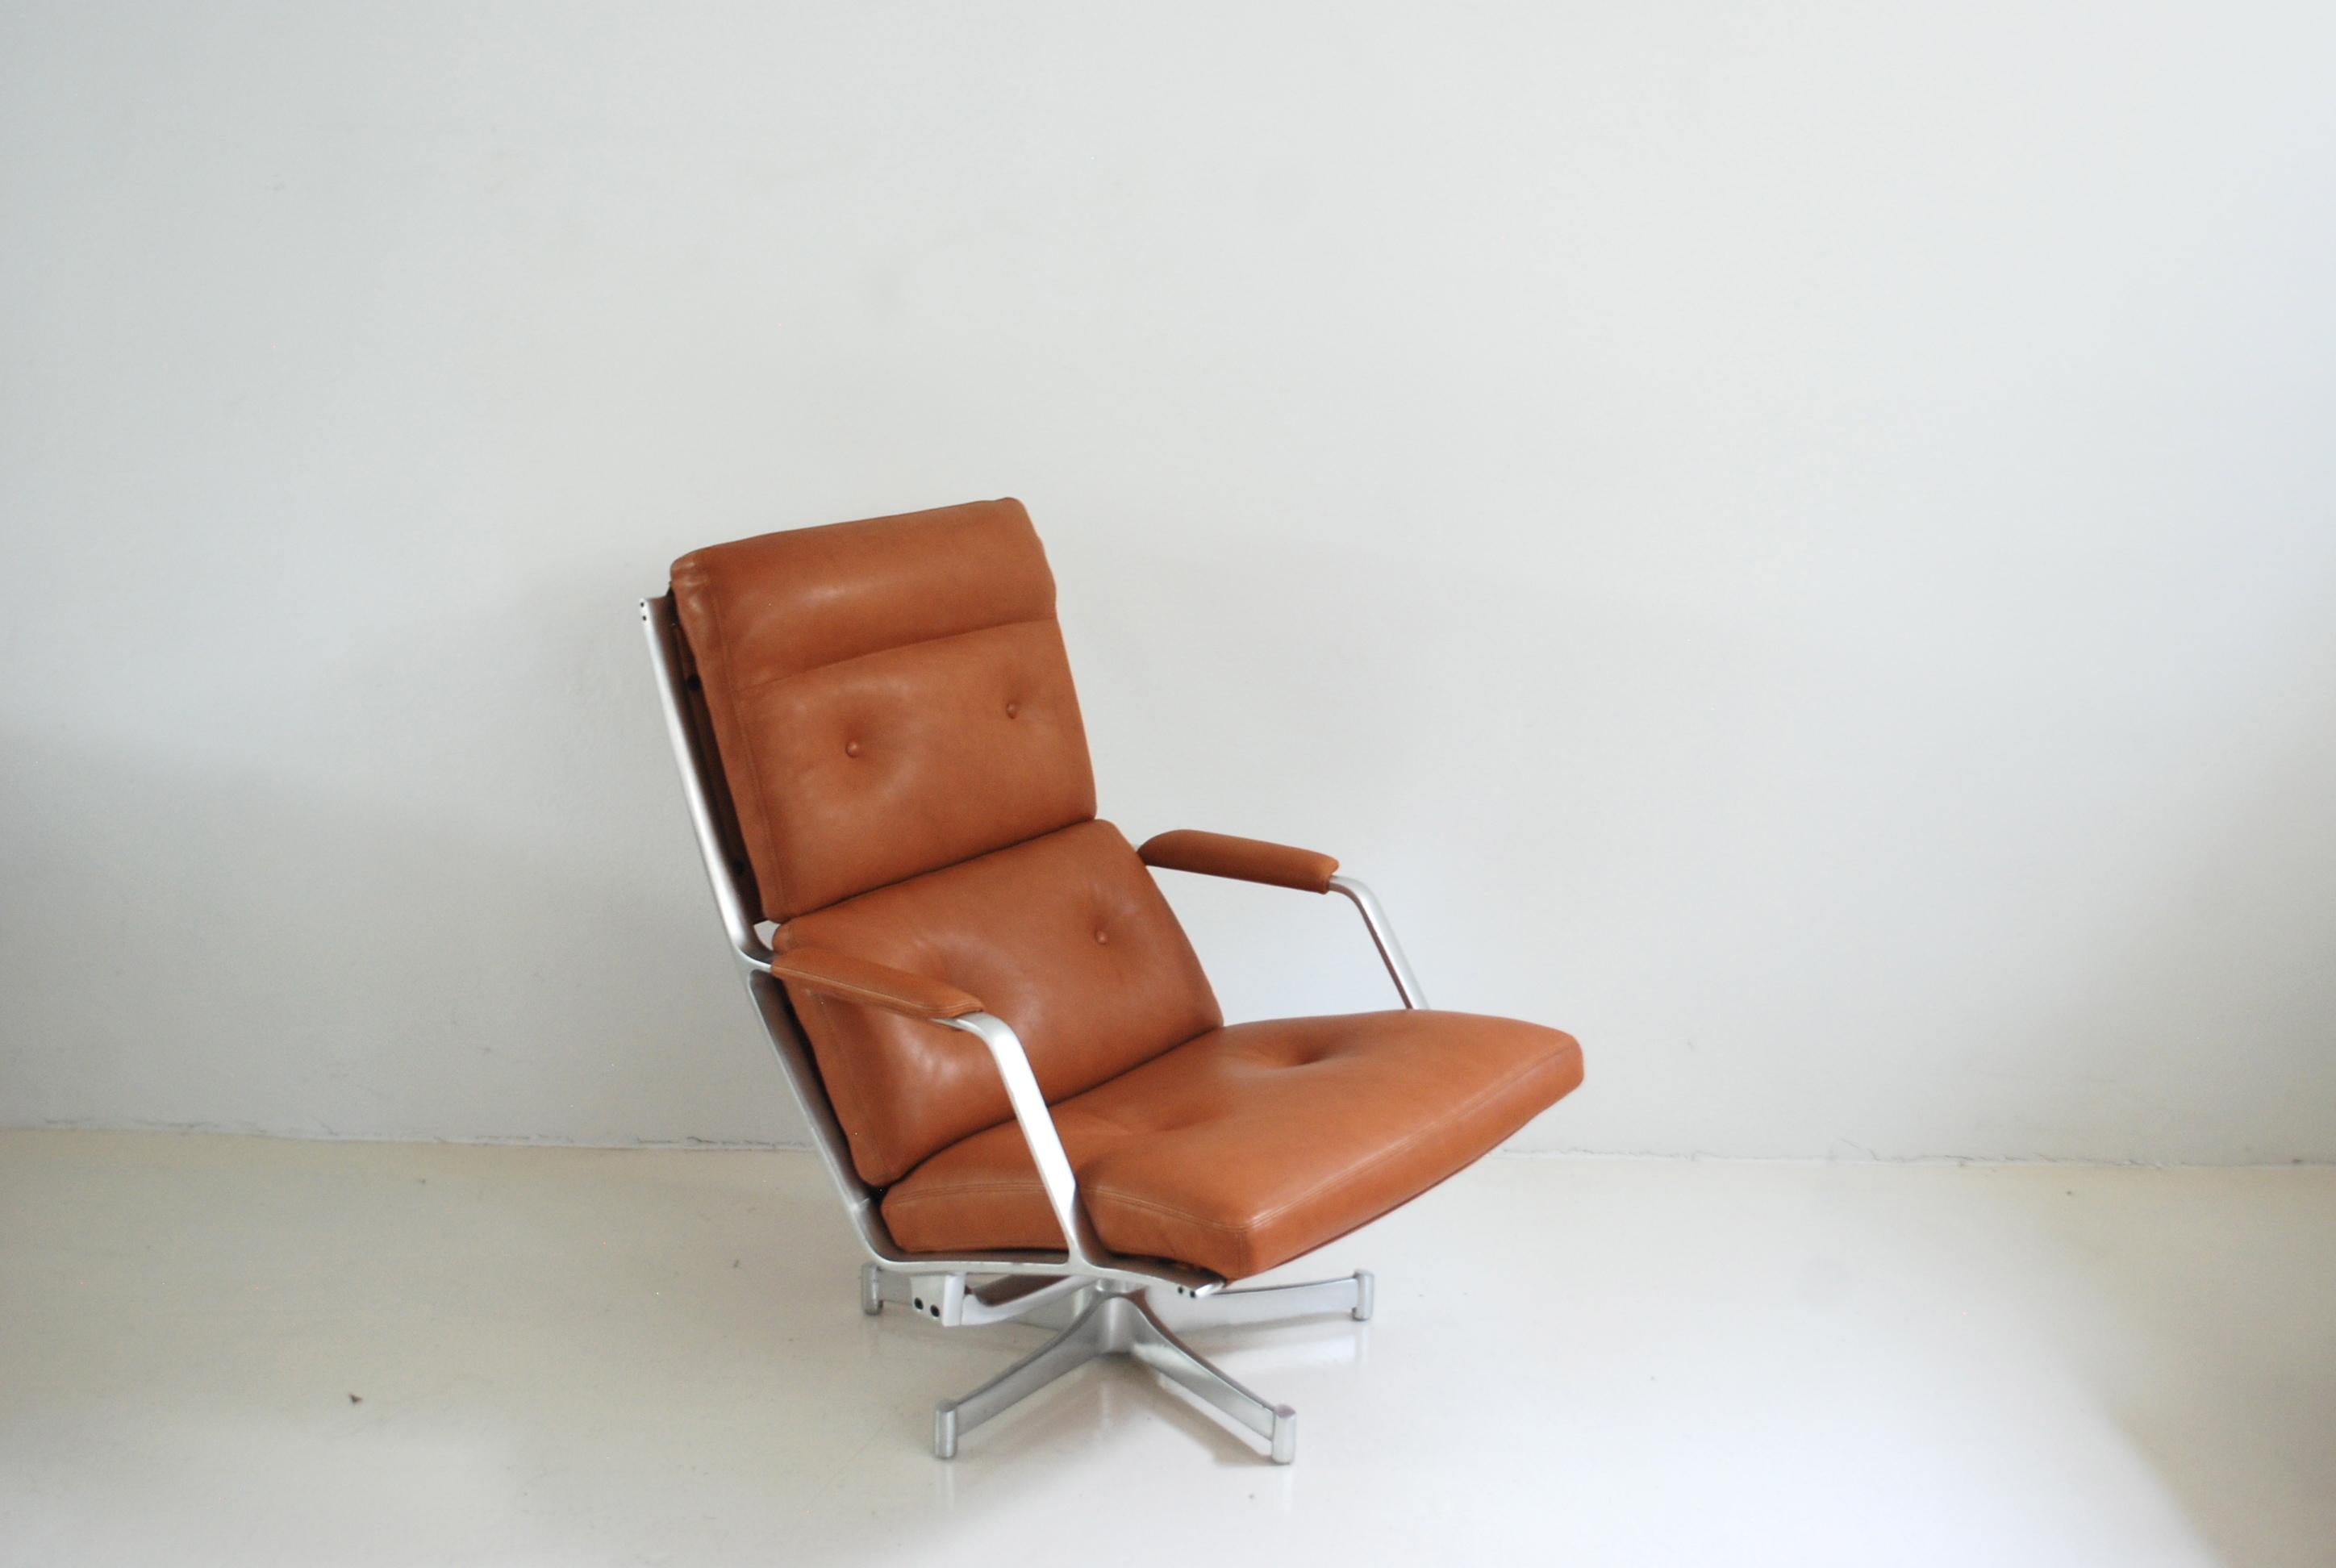 Cette chaise longue FK 85 a été réalisée par Jorgen Kastholm & Preben Fabricius pour Kill international.
Le fauteuil de salon est doté d'un cadre en aluminium pivotant et d'un cuir naturel cognac souple.
Elle était recouverte d'un cuir aniline